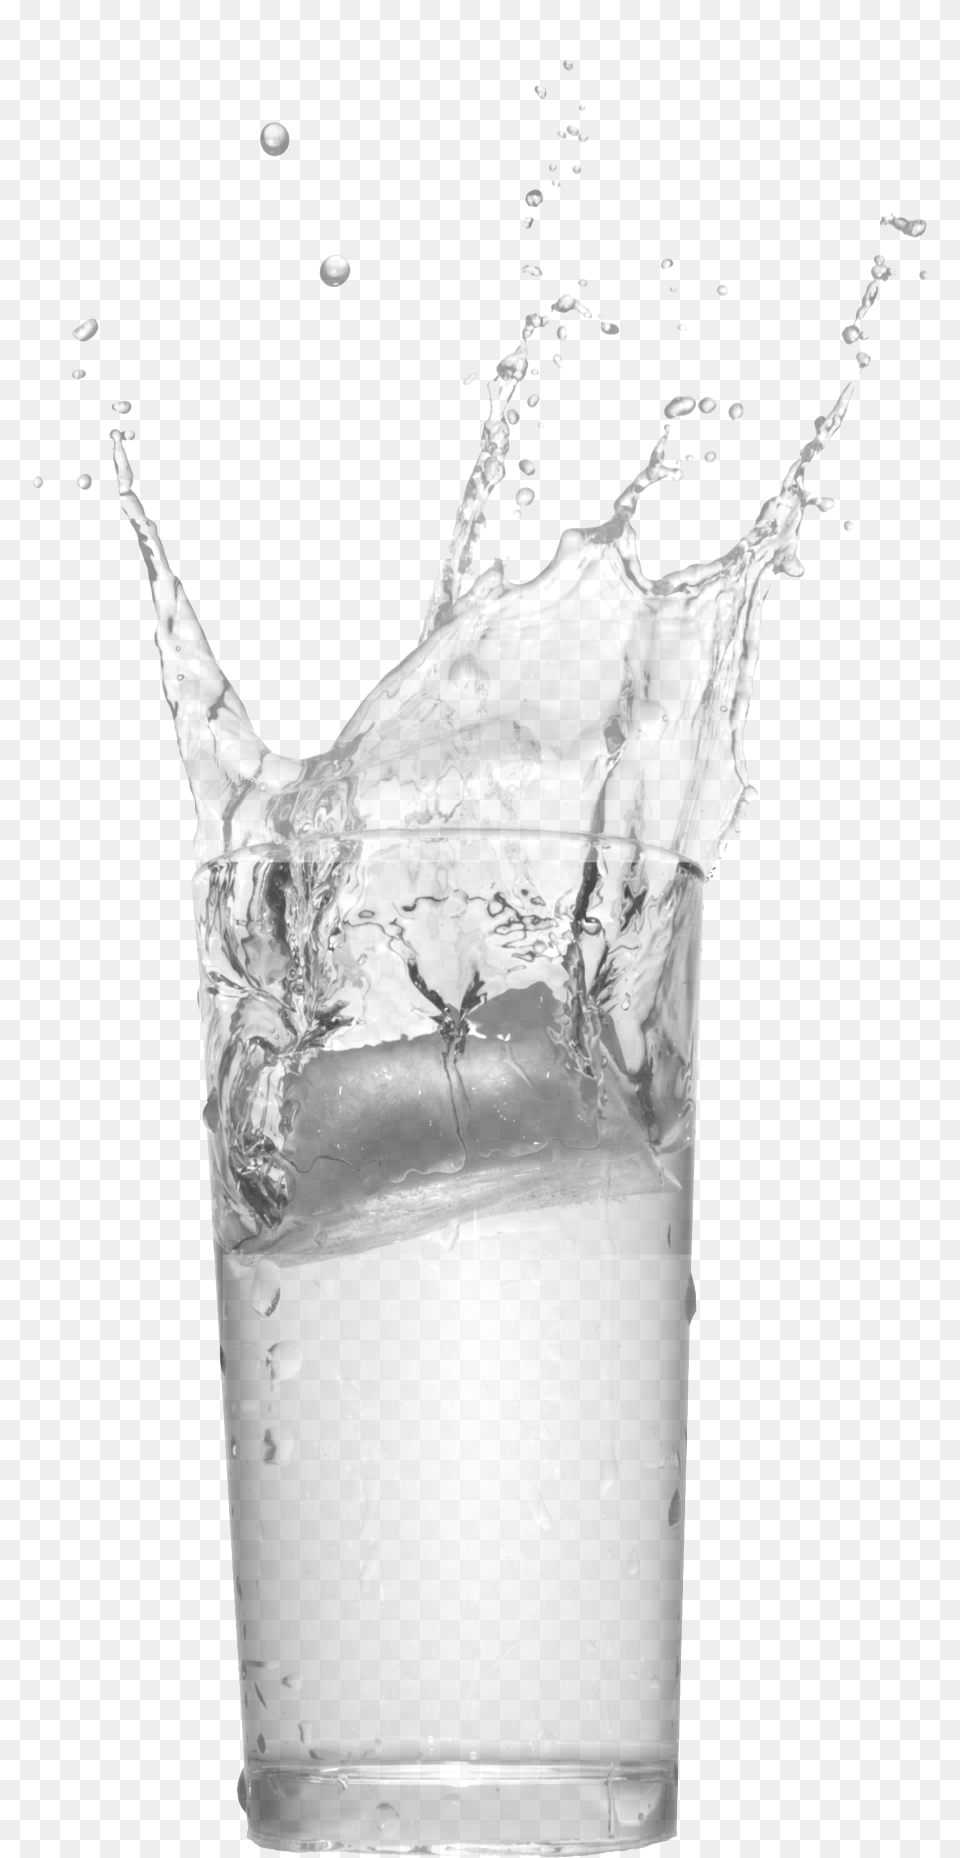 Cocktail, Beverage, Milk, Glass, Adult Free Transparent Png